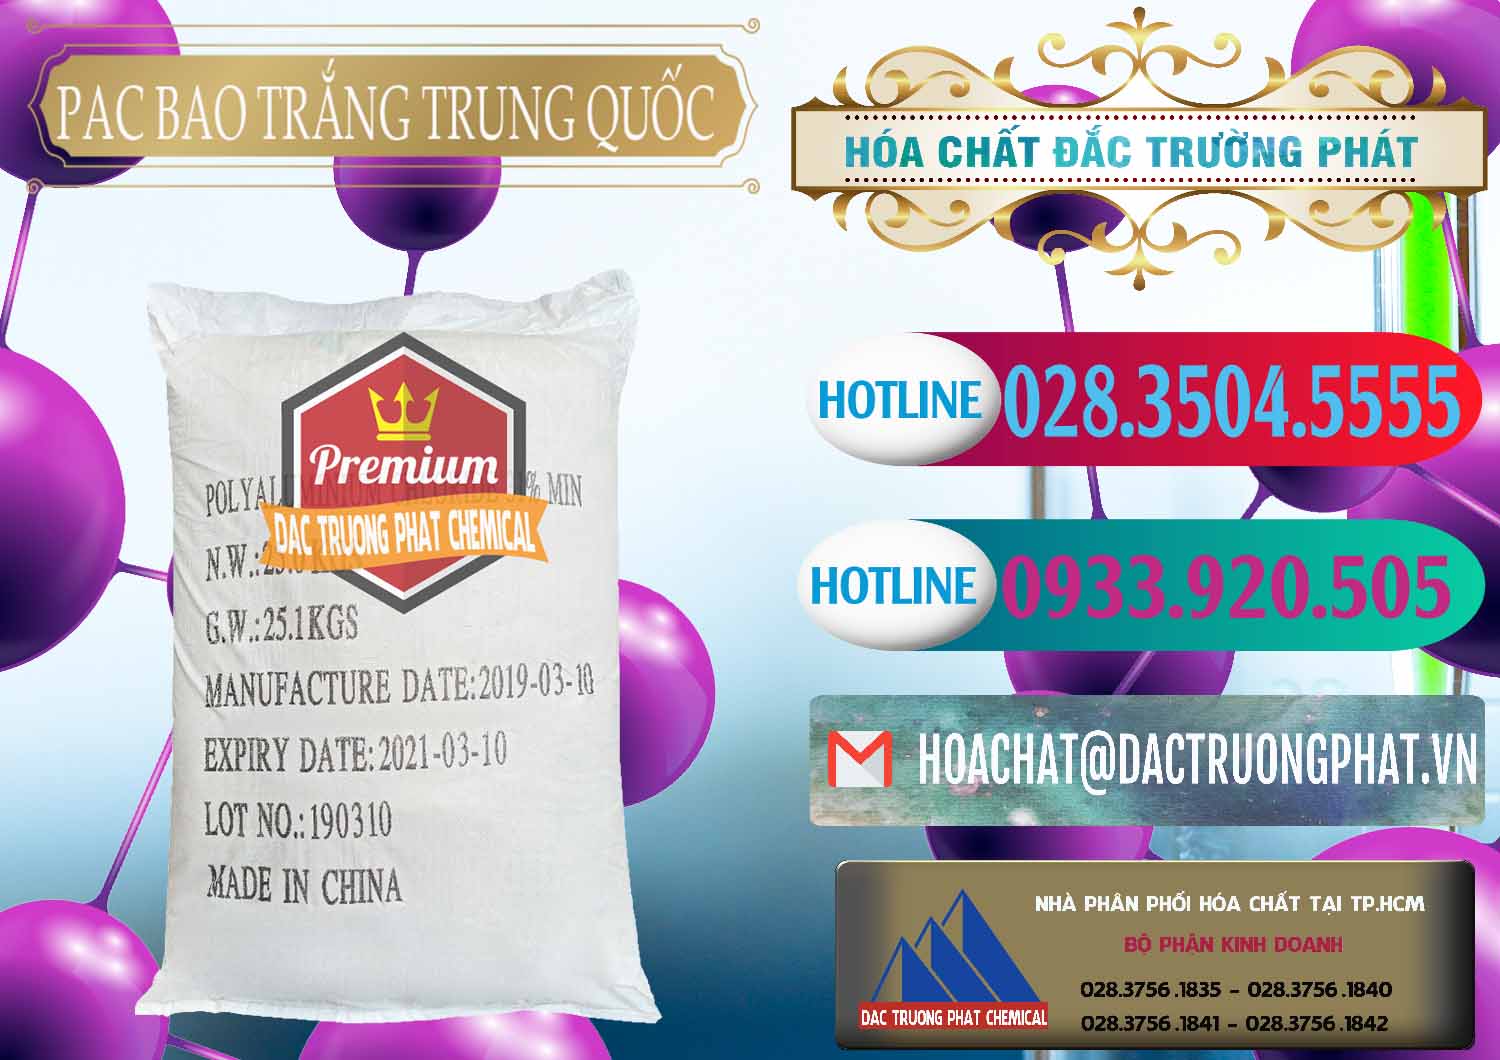 Công ty chuyên bán và phân phối PAC - Polyaluminium Chloride Bao Trắng Trung Quốc China - 0108 - Phân phối & cung ứng hóa chất tại TP.HCM - truongphat.vn